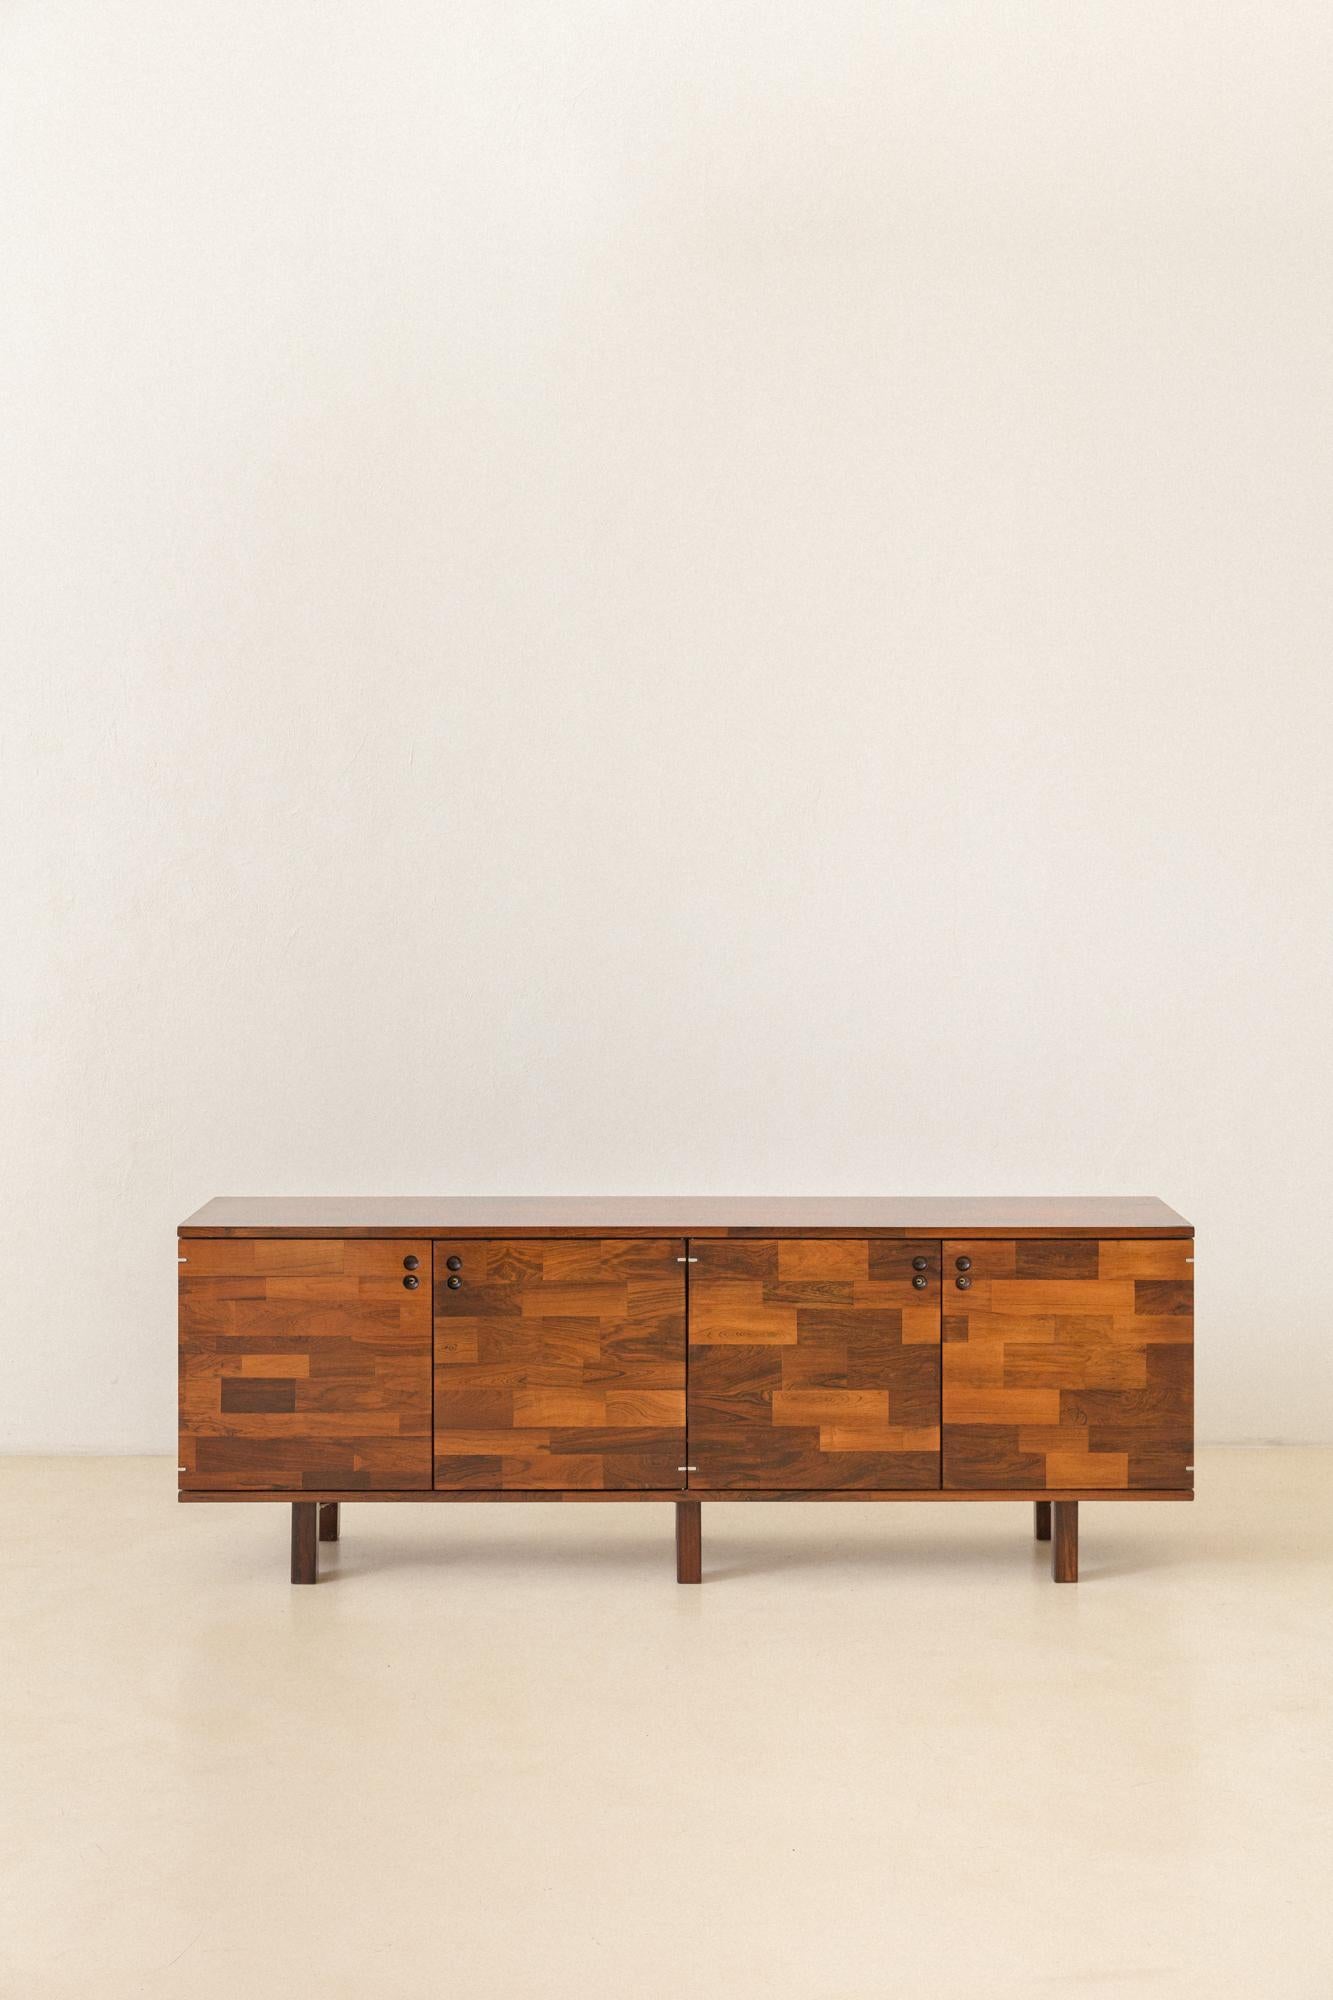 Cette crédence en bois de rose, conçue par Jorge Zalszupin (1922-2020) et fabriquée par L'Atelier dans les années 1960, est une excellente façon d'avoir la diversité des différents tons de bois de rose en une seule pièce.

La pièce est en très bon